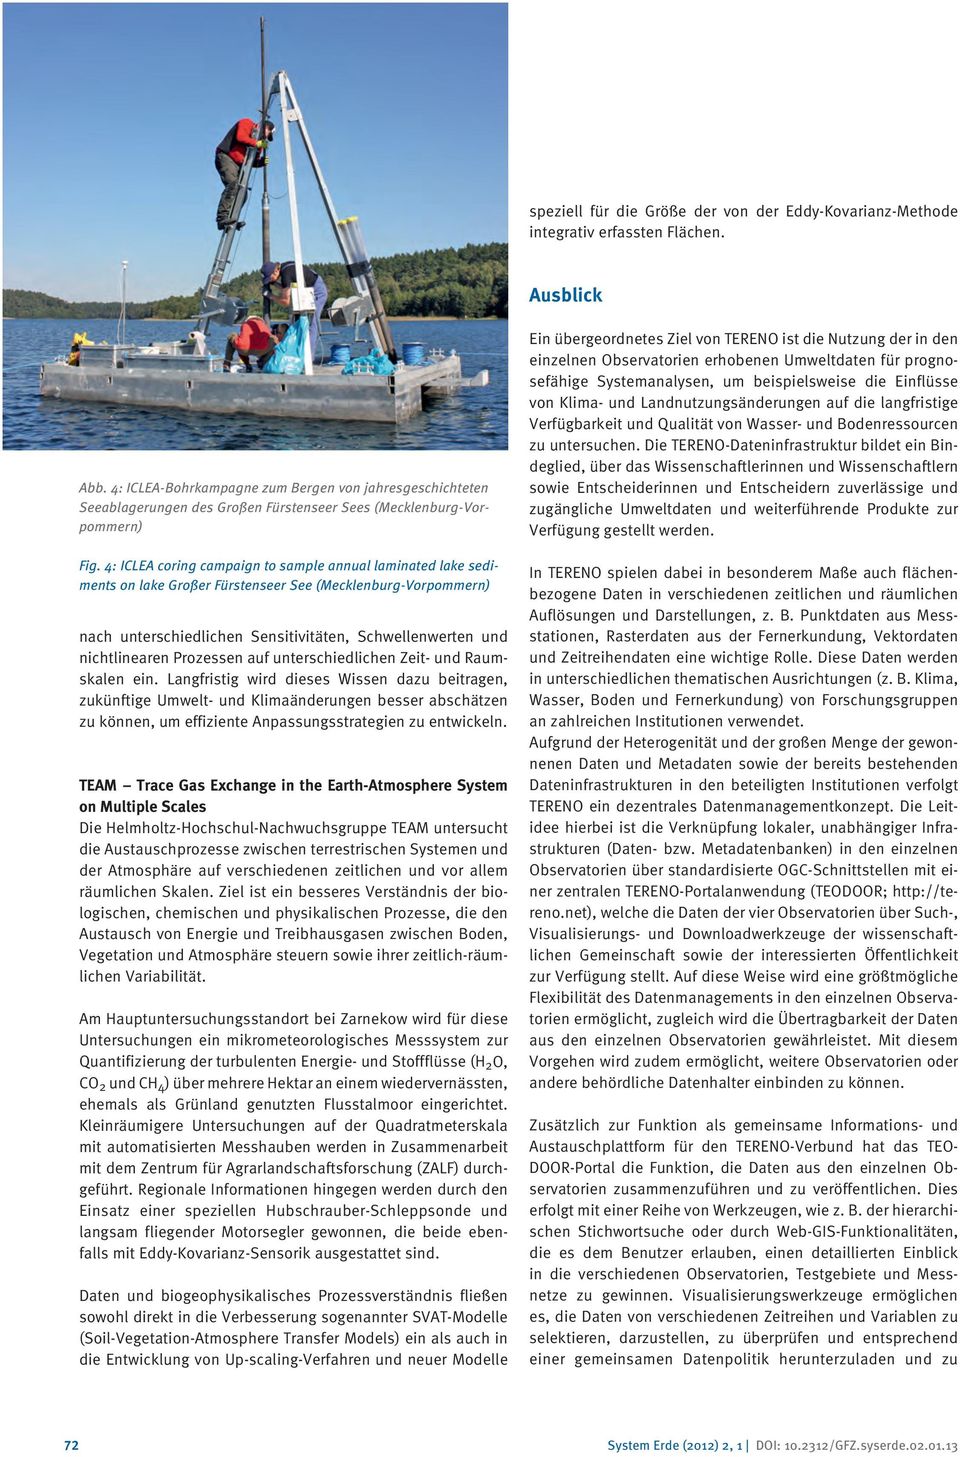 4: ICLEA coring campaign to sample annual laminated lake sediments on lake Großer Fürstenseer See (Mecklenburg-Vorpommern) nach unterschiedlichen Sensitivitäten, Schwellenwerten und nichtlinearen